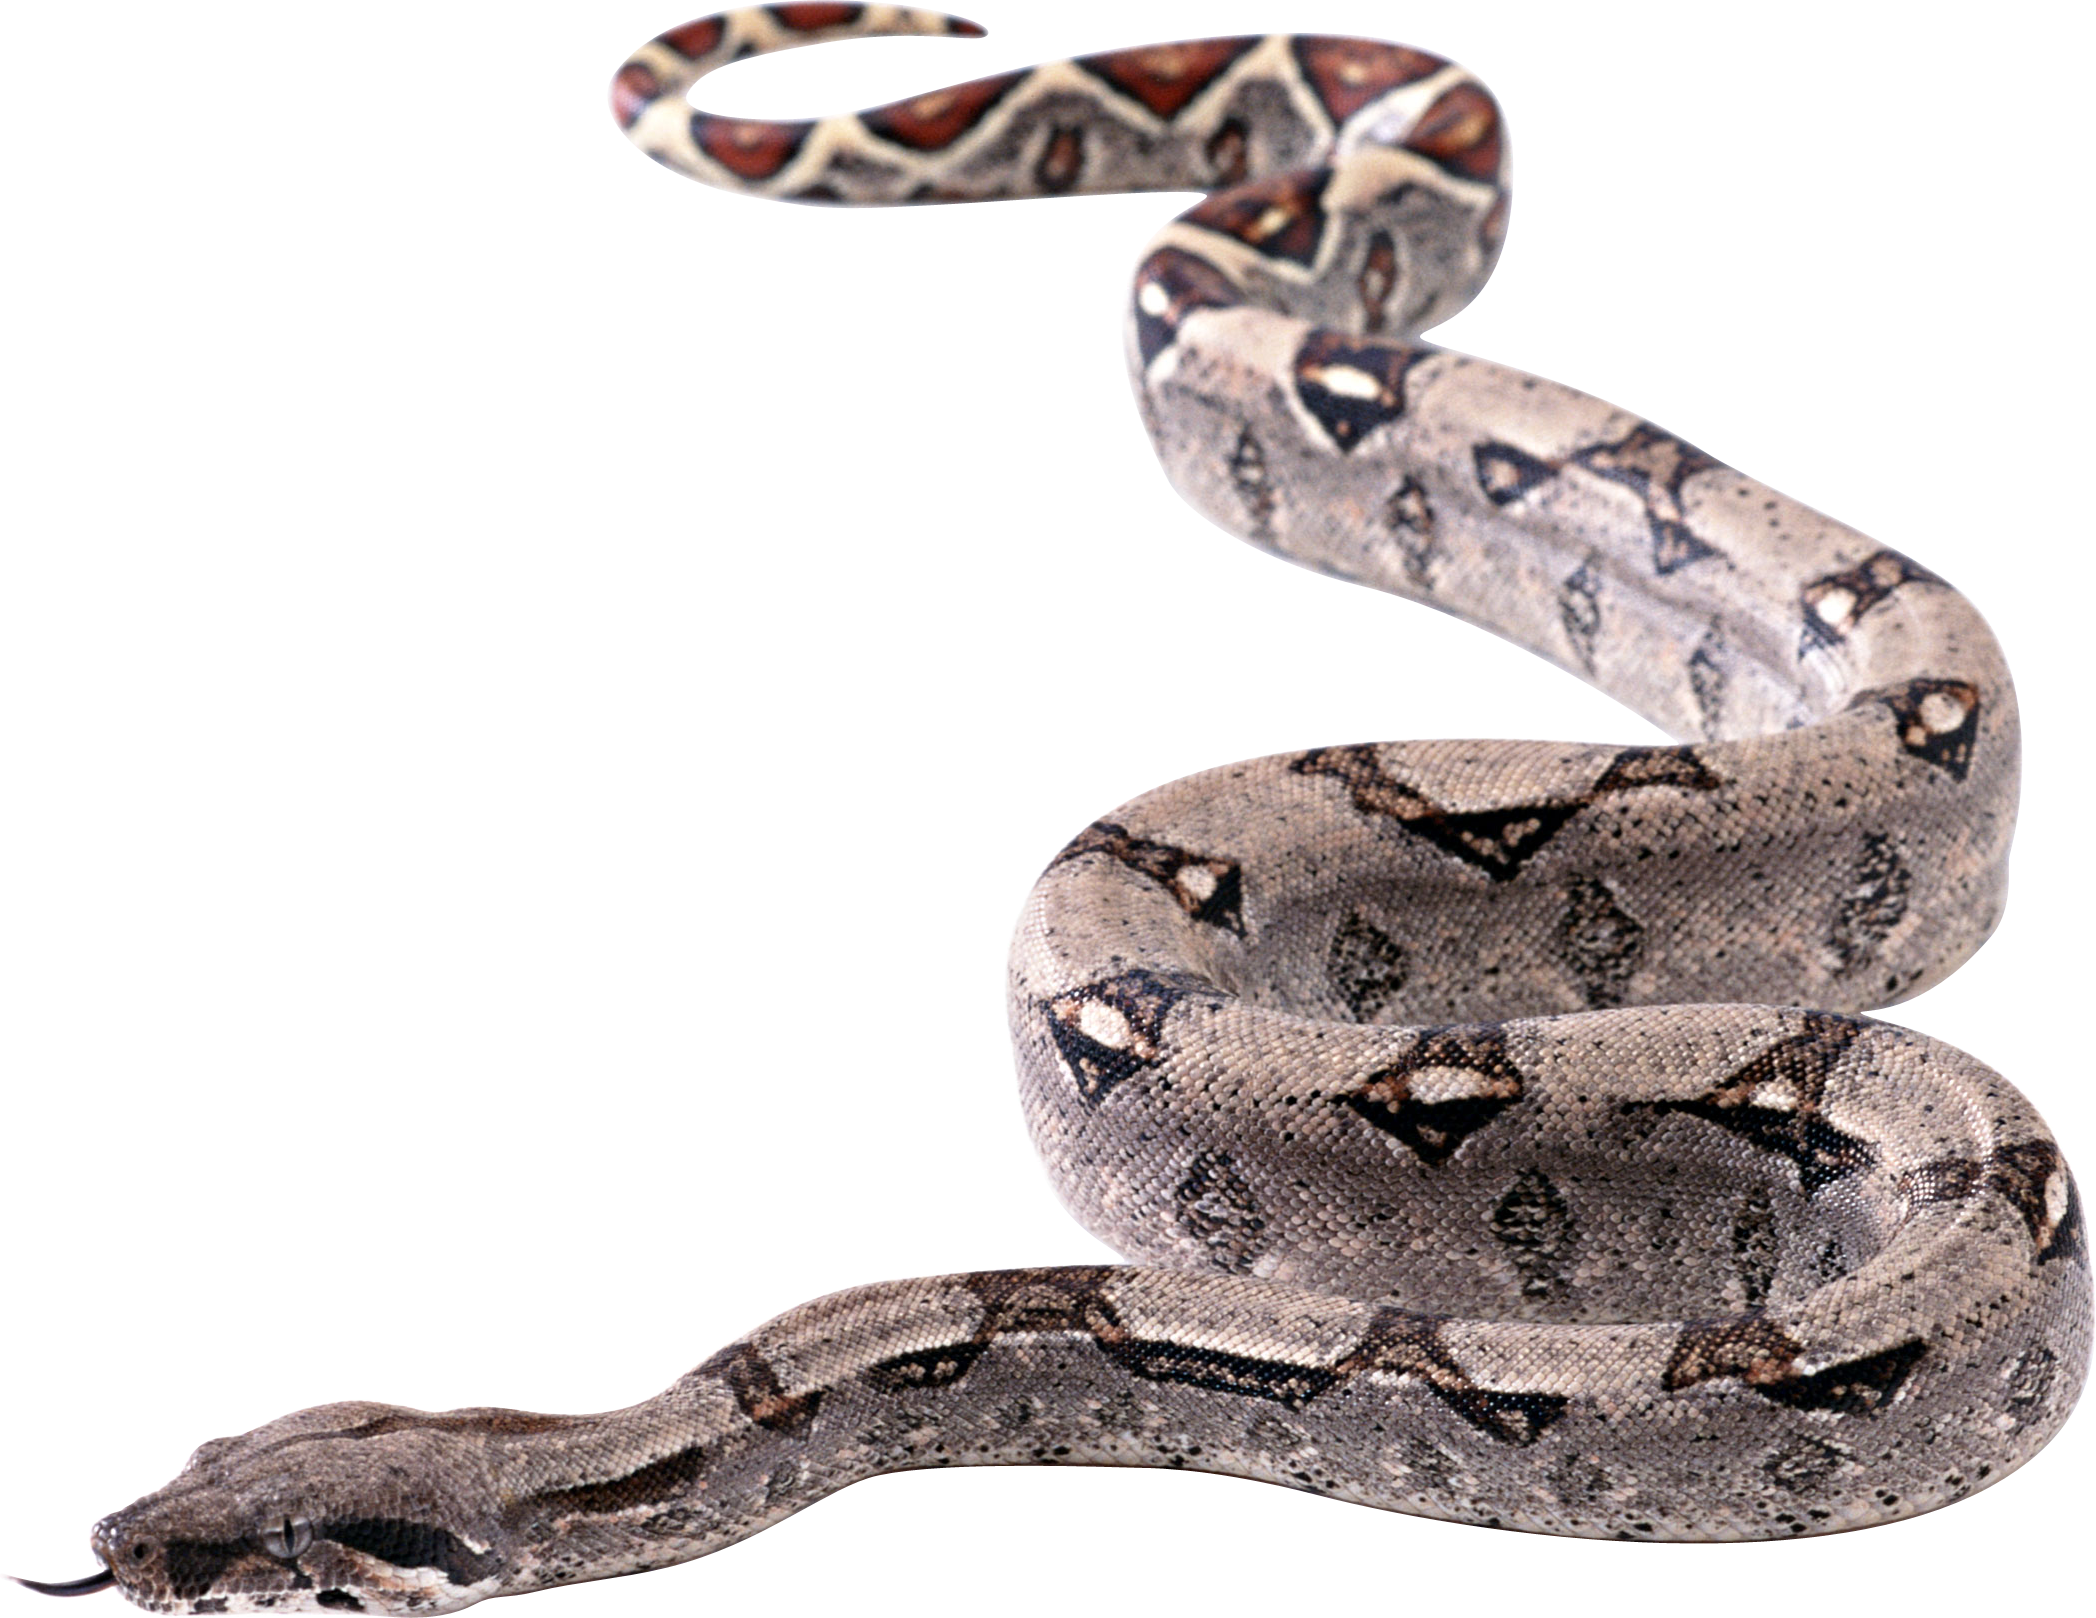 Titanoboa Snake Transparent Image